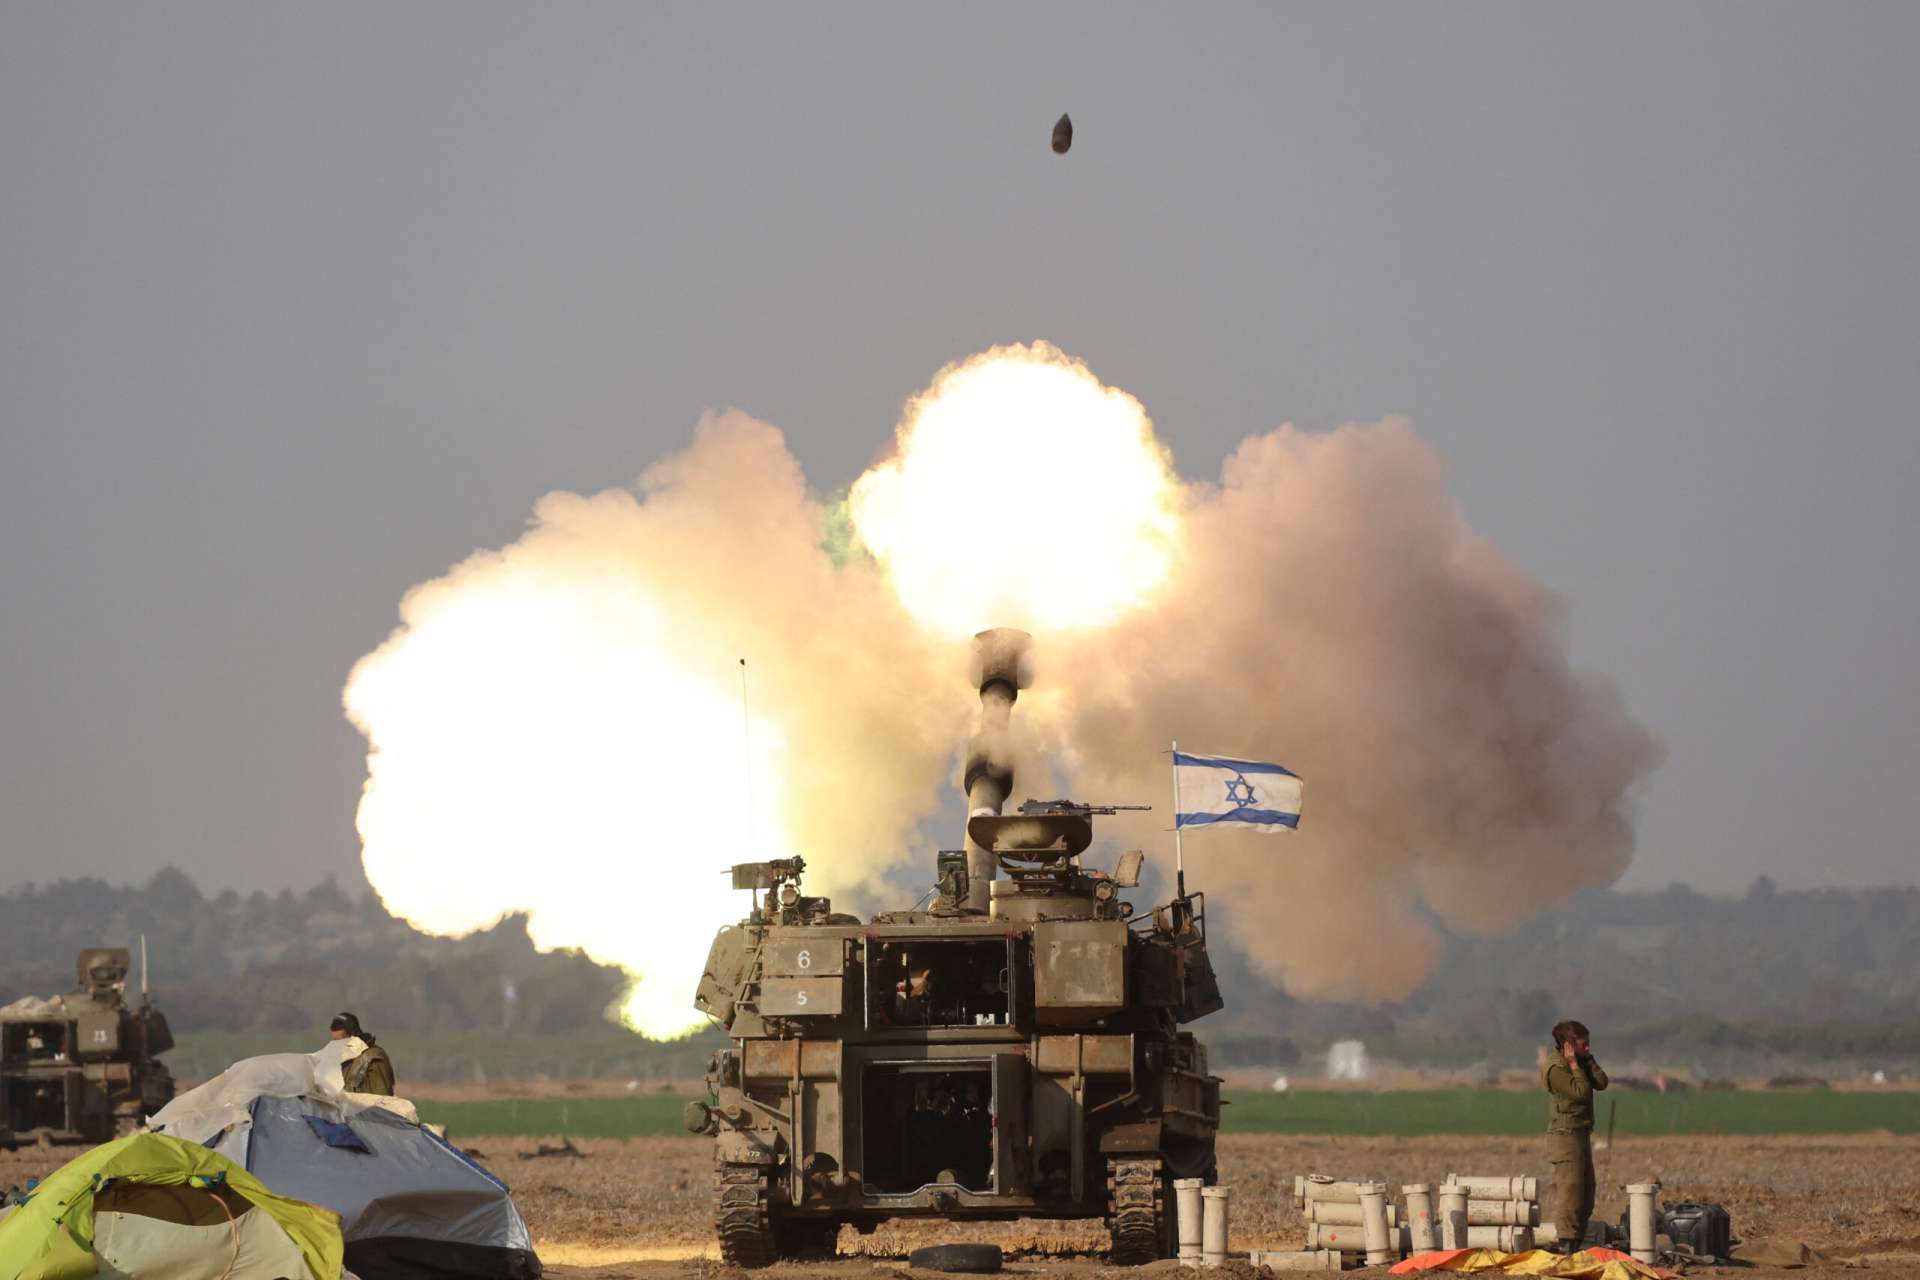  ΟΗΕ: Με συντριπτική πλειοψηφία ζητά άμεση κατάπαυση του πυρός στη Γάζα – Χαιρετίζει η Παλαιστινιακή Αρχή, αντιδρά το Ισραήλ